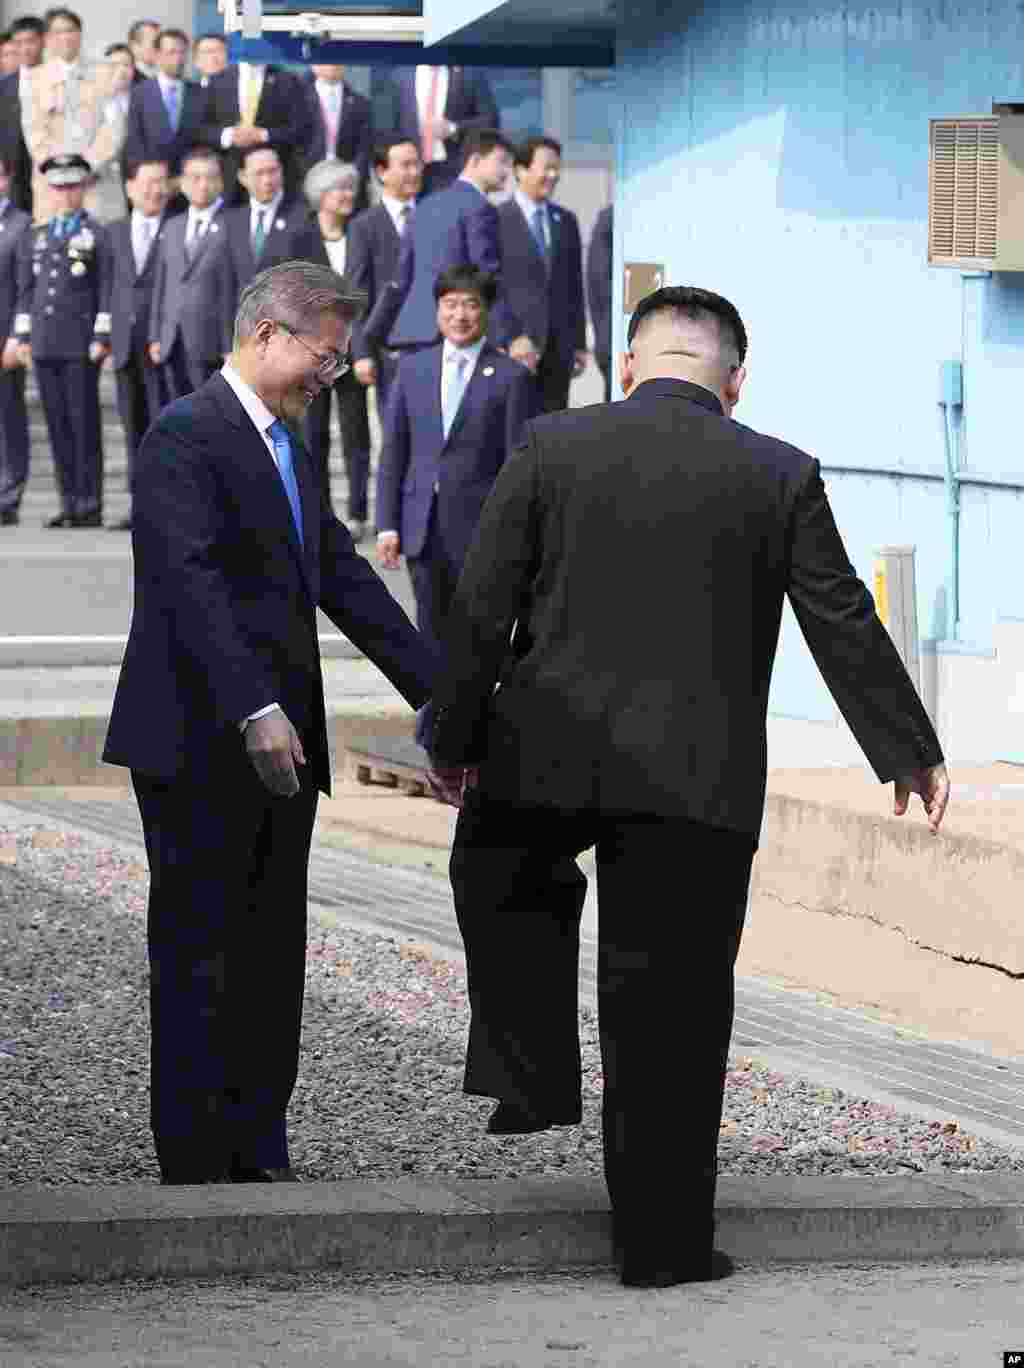 Le leader nord-coréen Kim Jong Un traverse la ligne de démarcation militaire pour rencontrer le président sud-coréen Moon Jae-in au village frontalier de Panmunjom dans la zone démilitarisée, le 27 avril 2018.